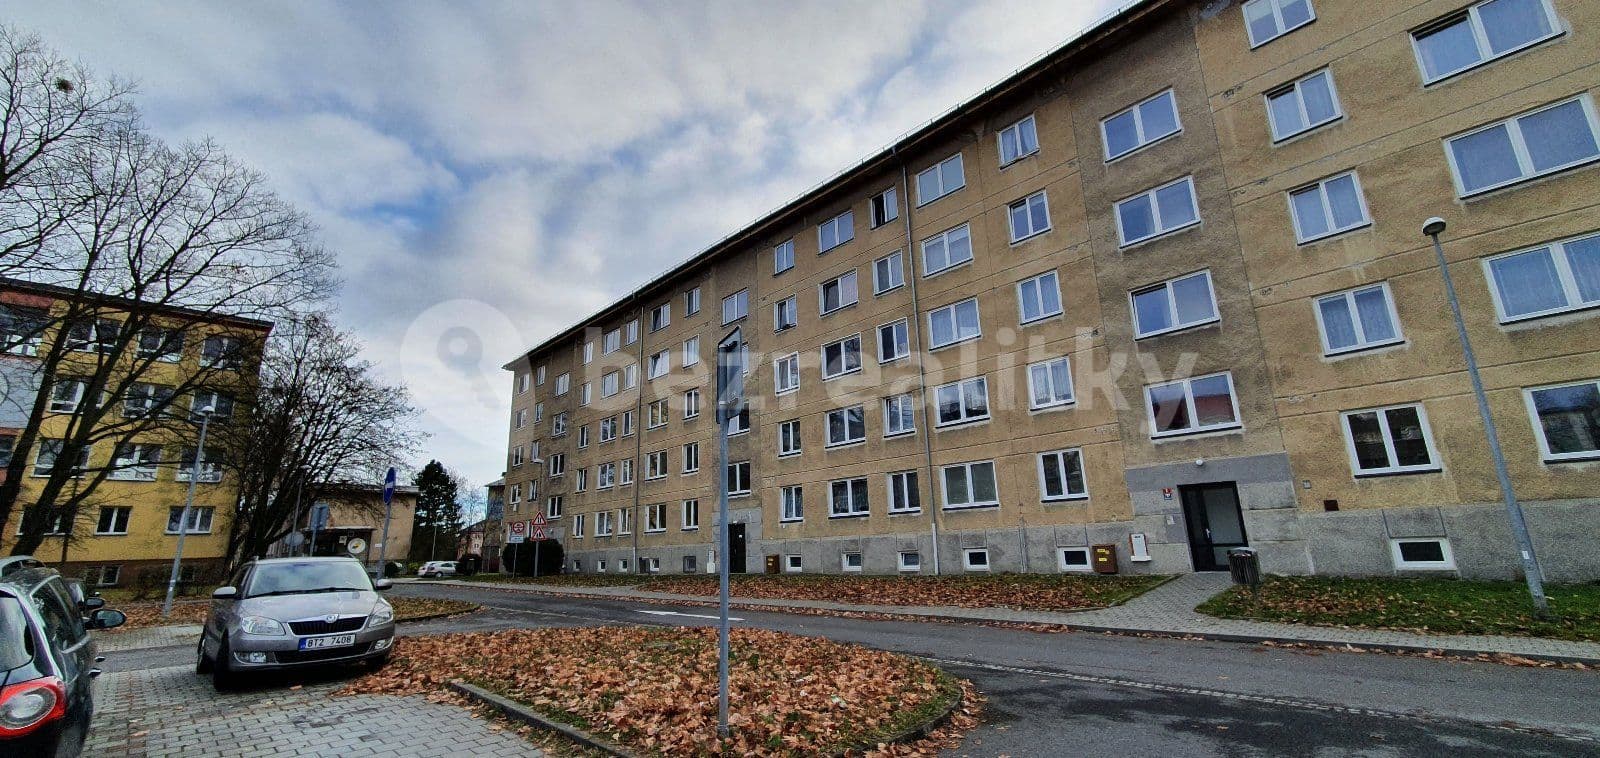 4 bedroom flat to rent, 73 m², Karla Čapka, Havířov, Moravskoslezský Region